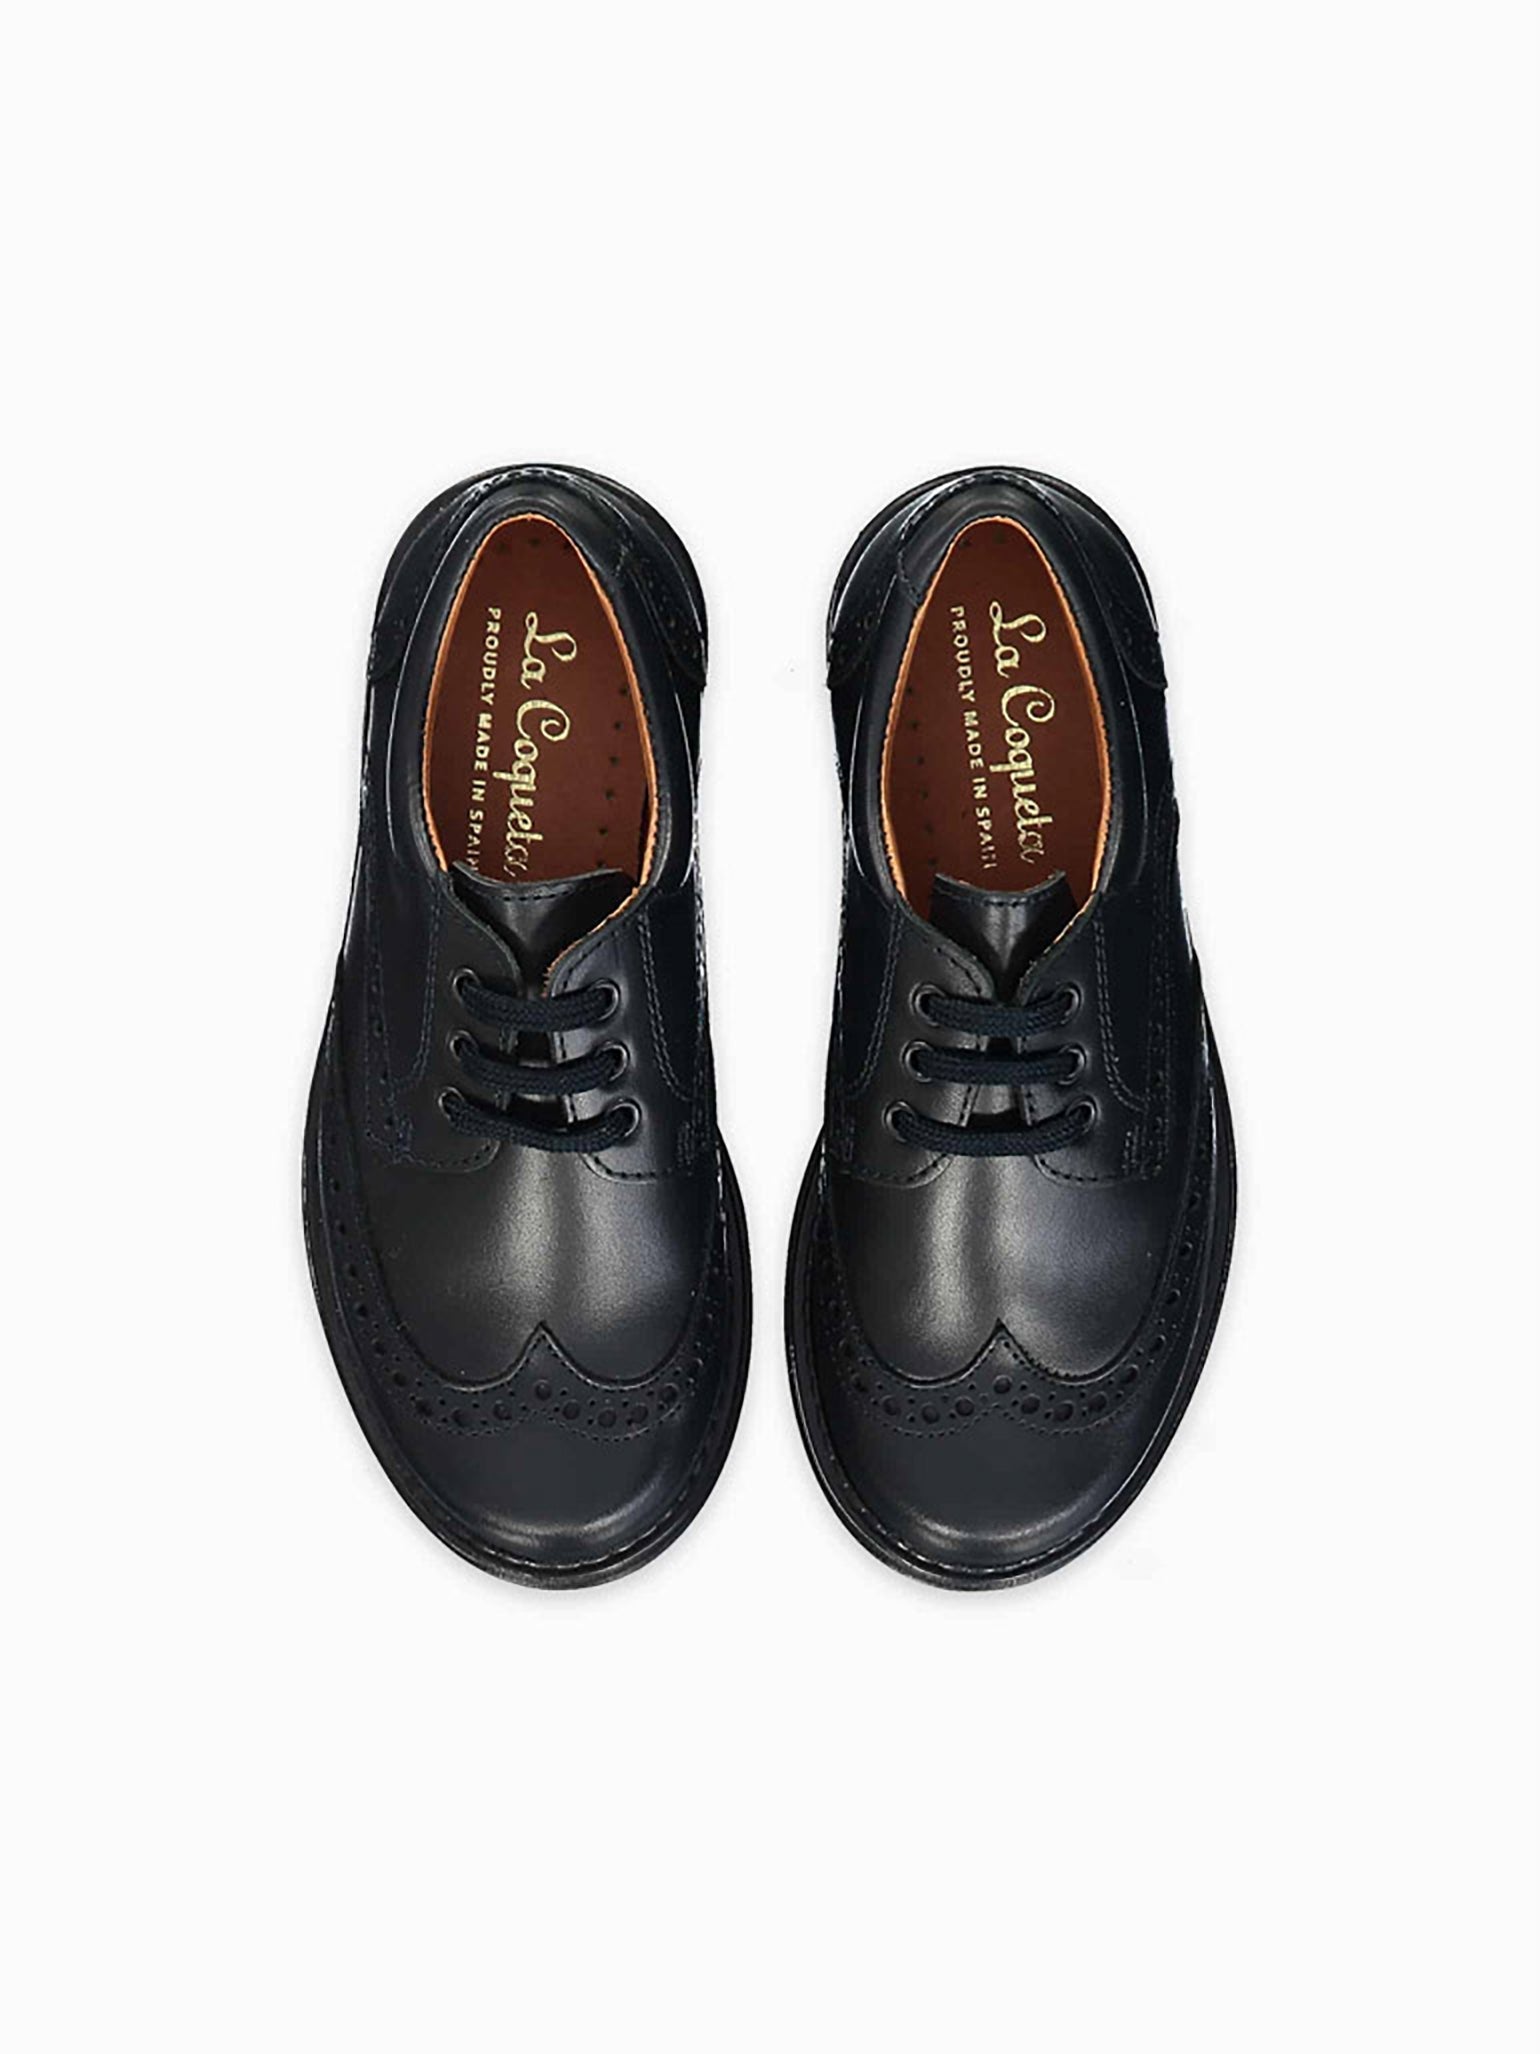 Black Leather Lace Up School Shoes – La Coqueta Kids